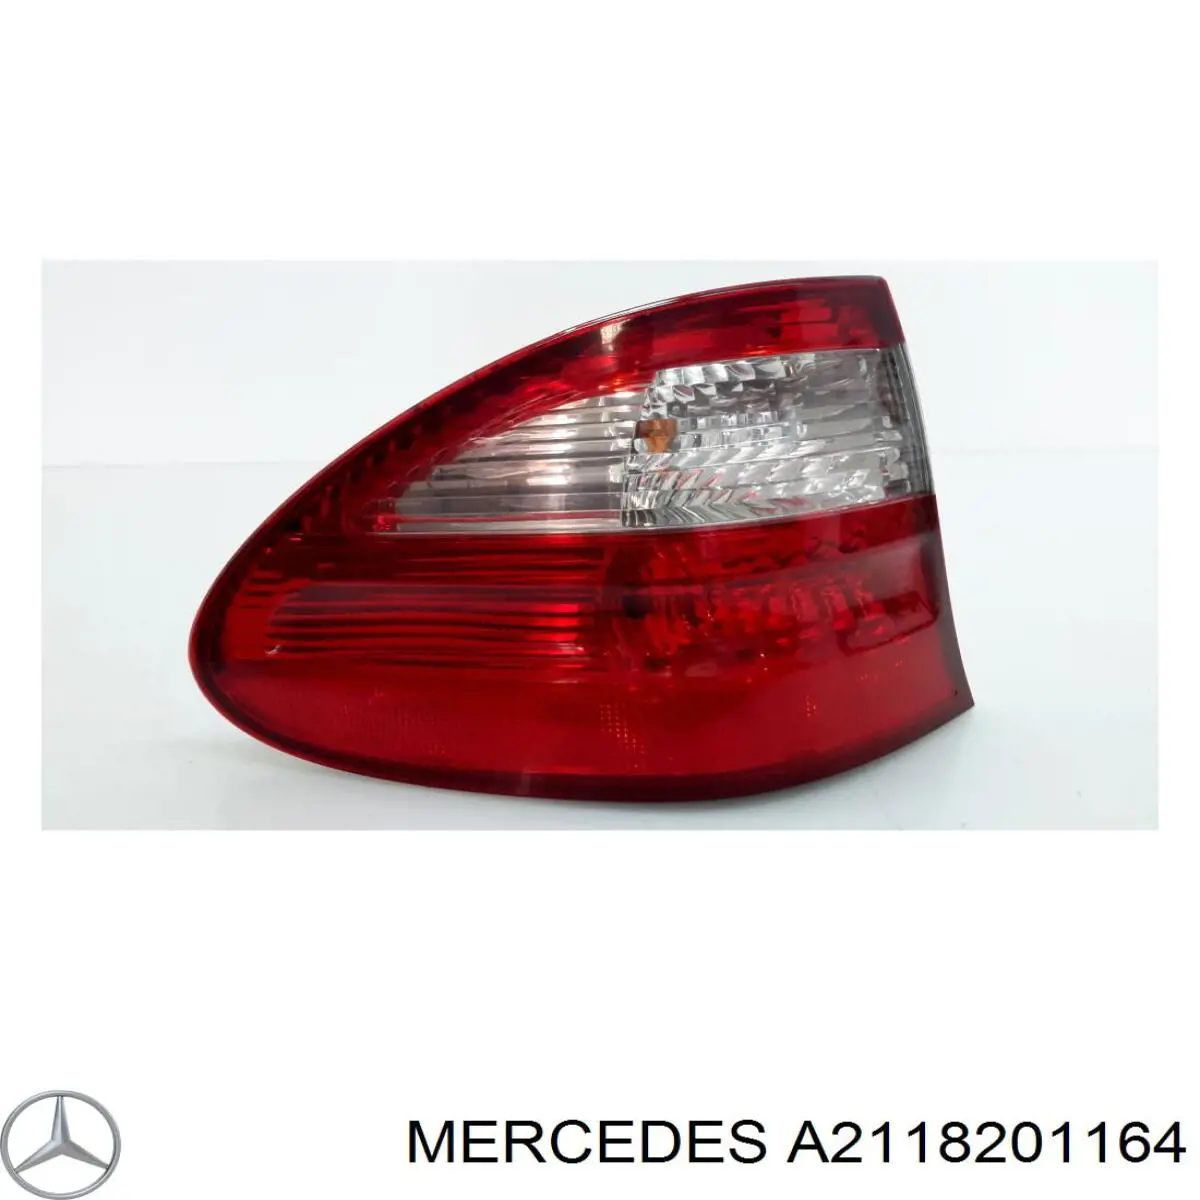 A2118201164 Mercedes lanterna traseira esquerda externa